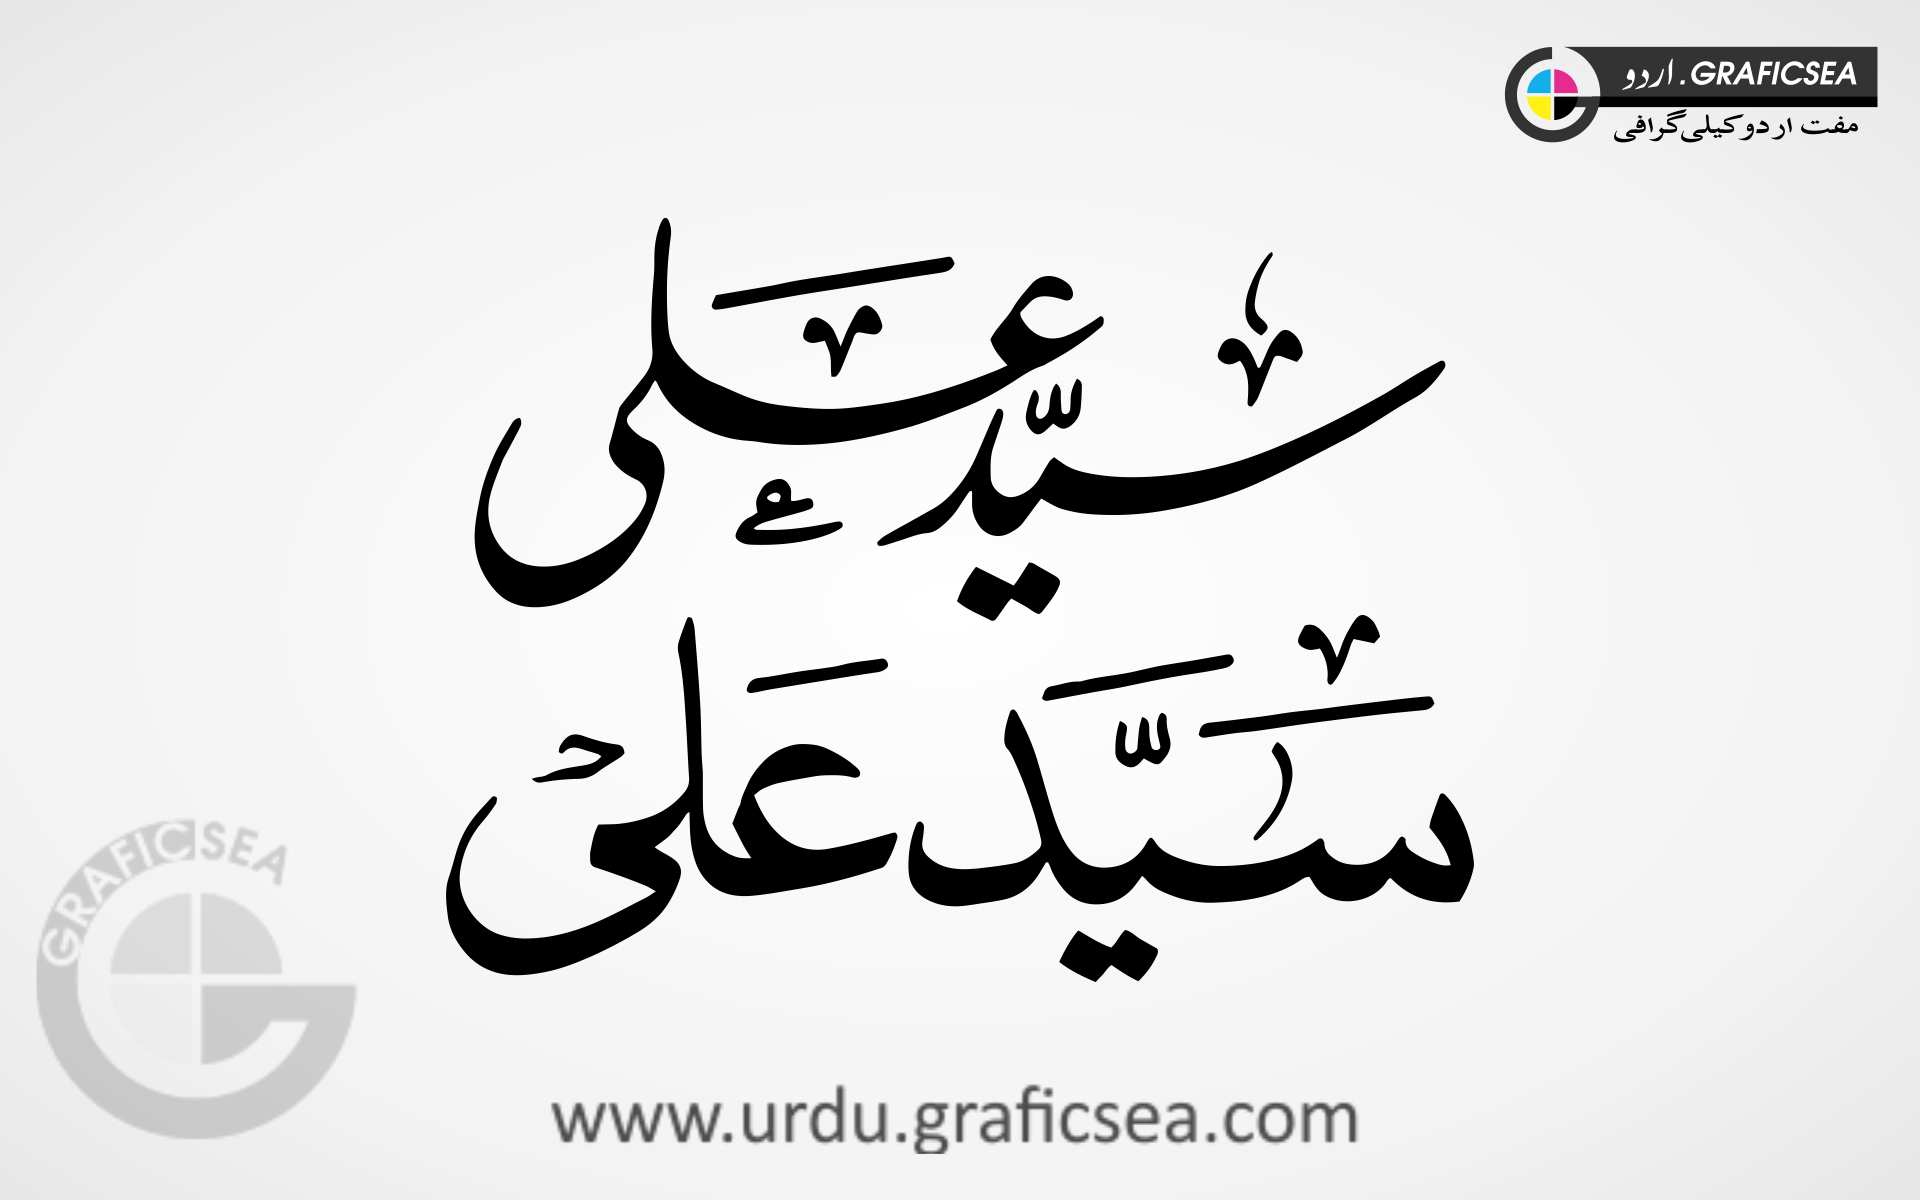 Islamic Name Syed Ali Urdu Calligraphy